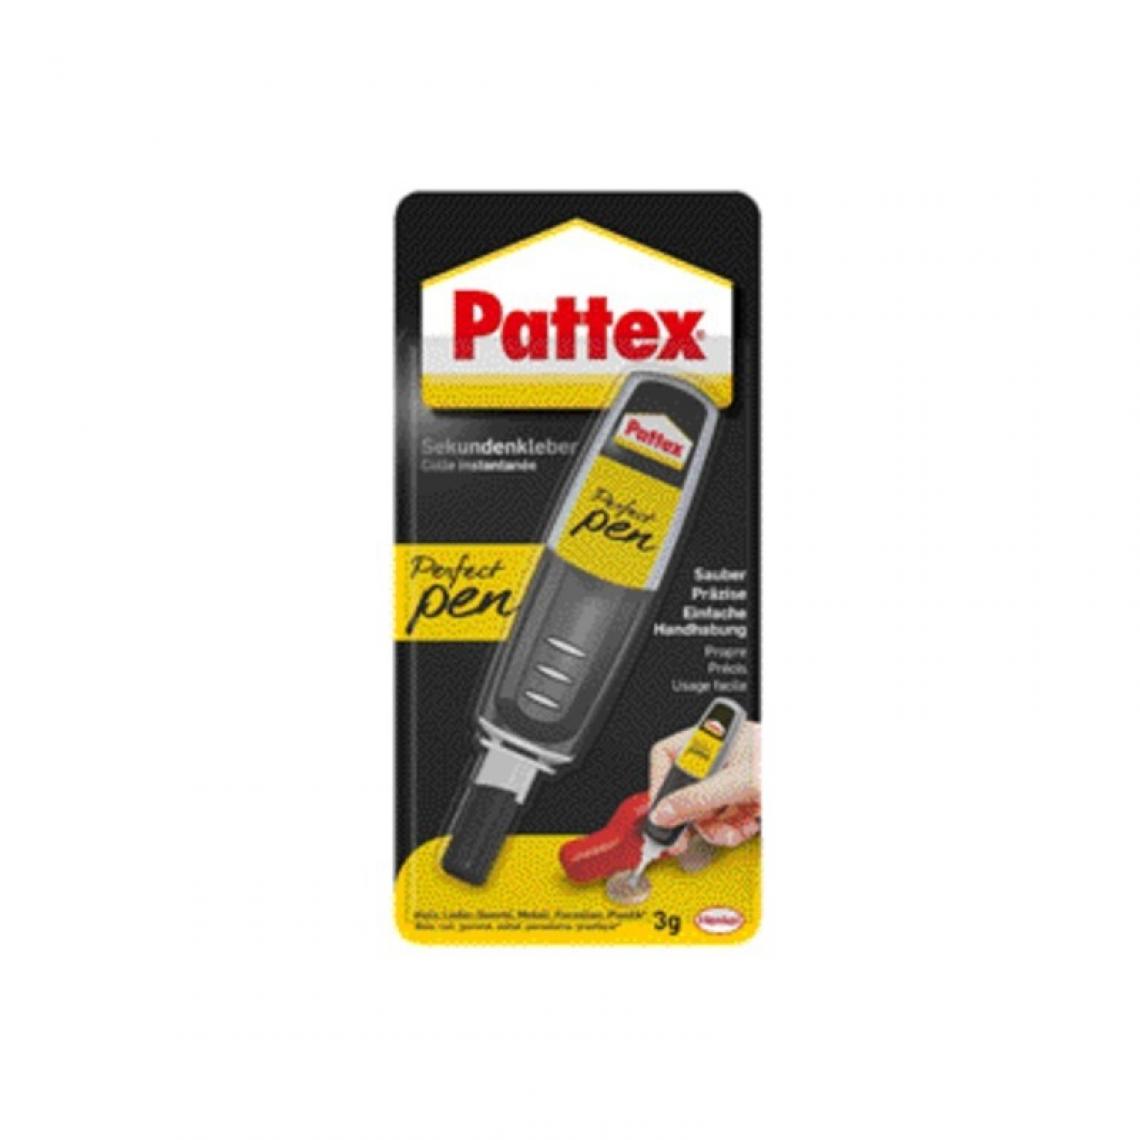 Pattex - Pattex colle instantanée Perfect Pen, 3g () - Colles et pistolets à colle